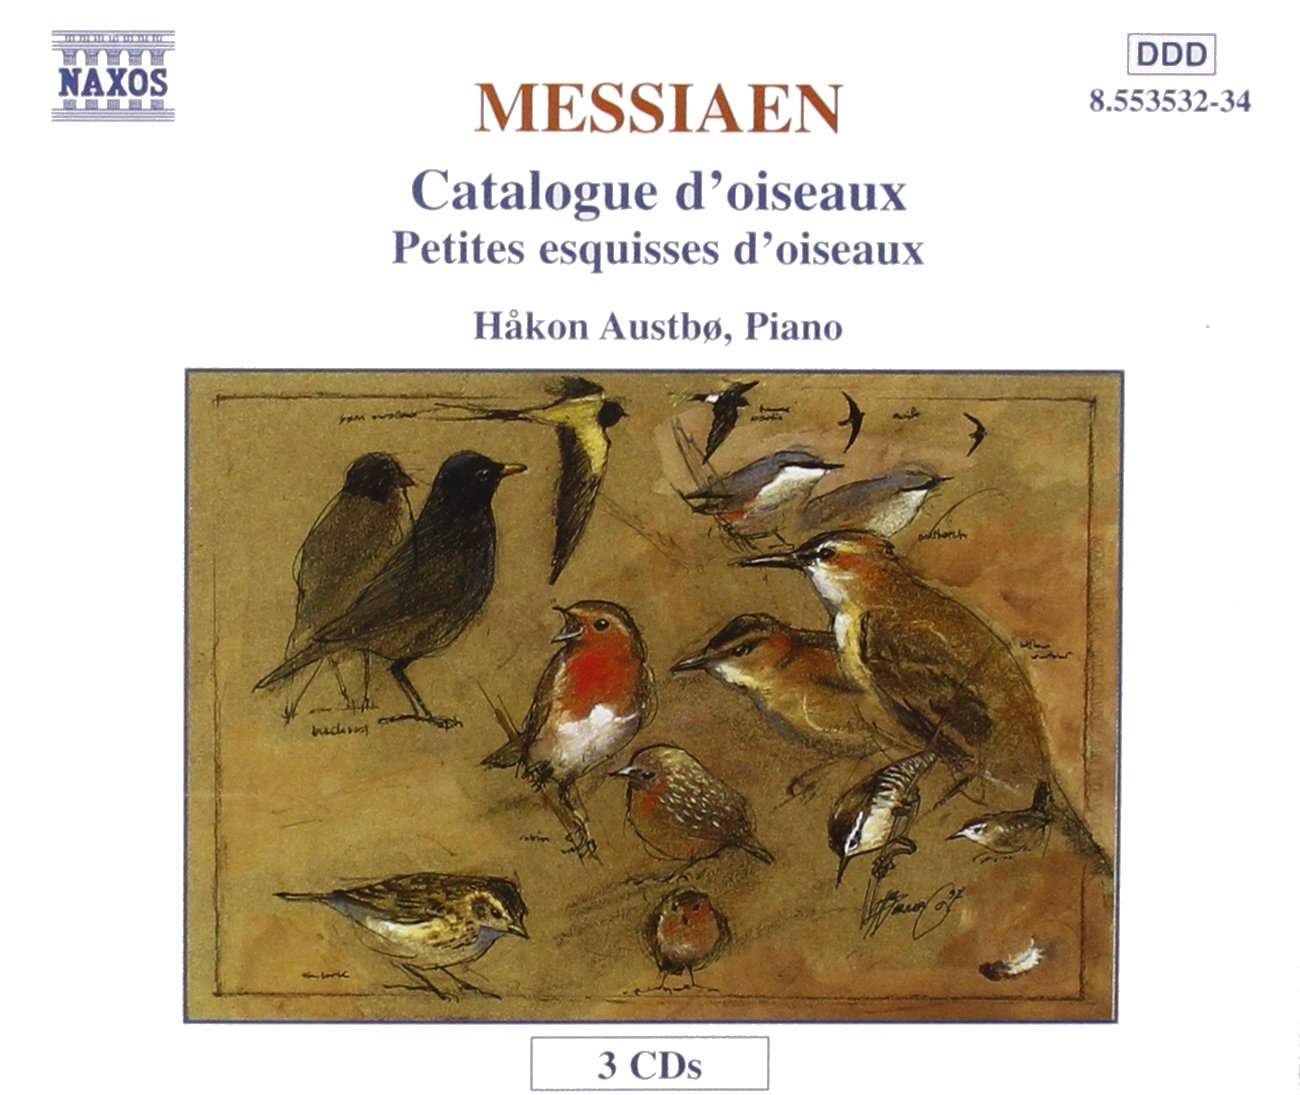 MESSIAEN: Catalogue d'oiseaux